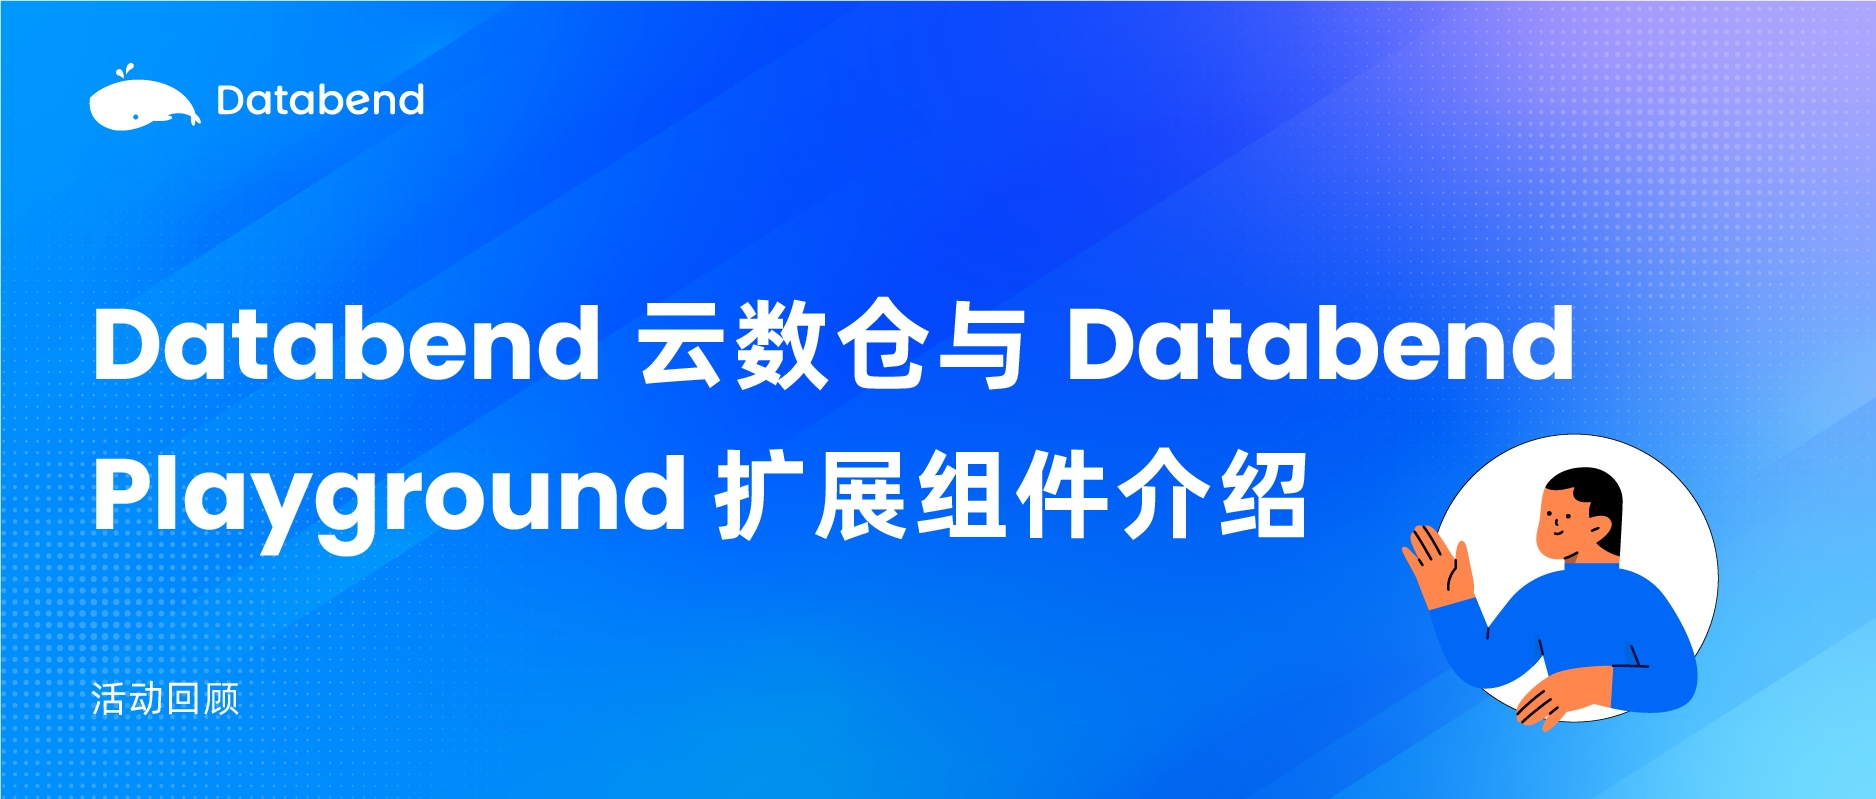 【活动回顾】Databend 云数仓与 Databend Playground 扩展组件介绍